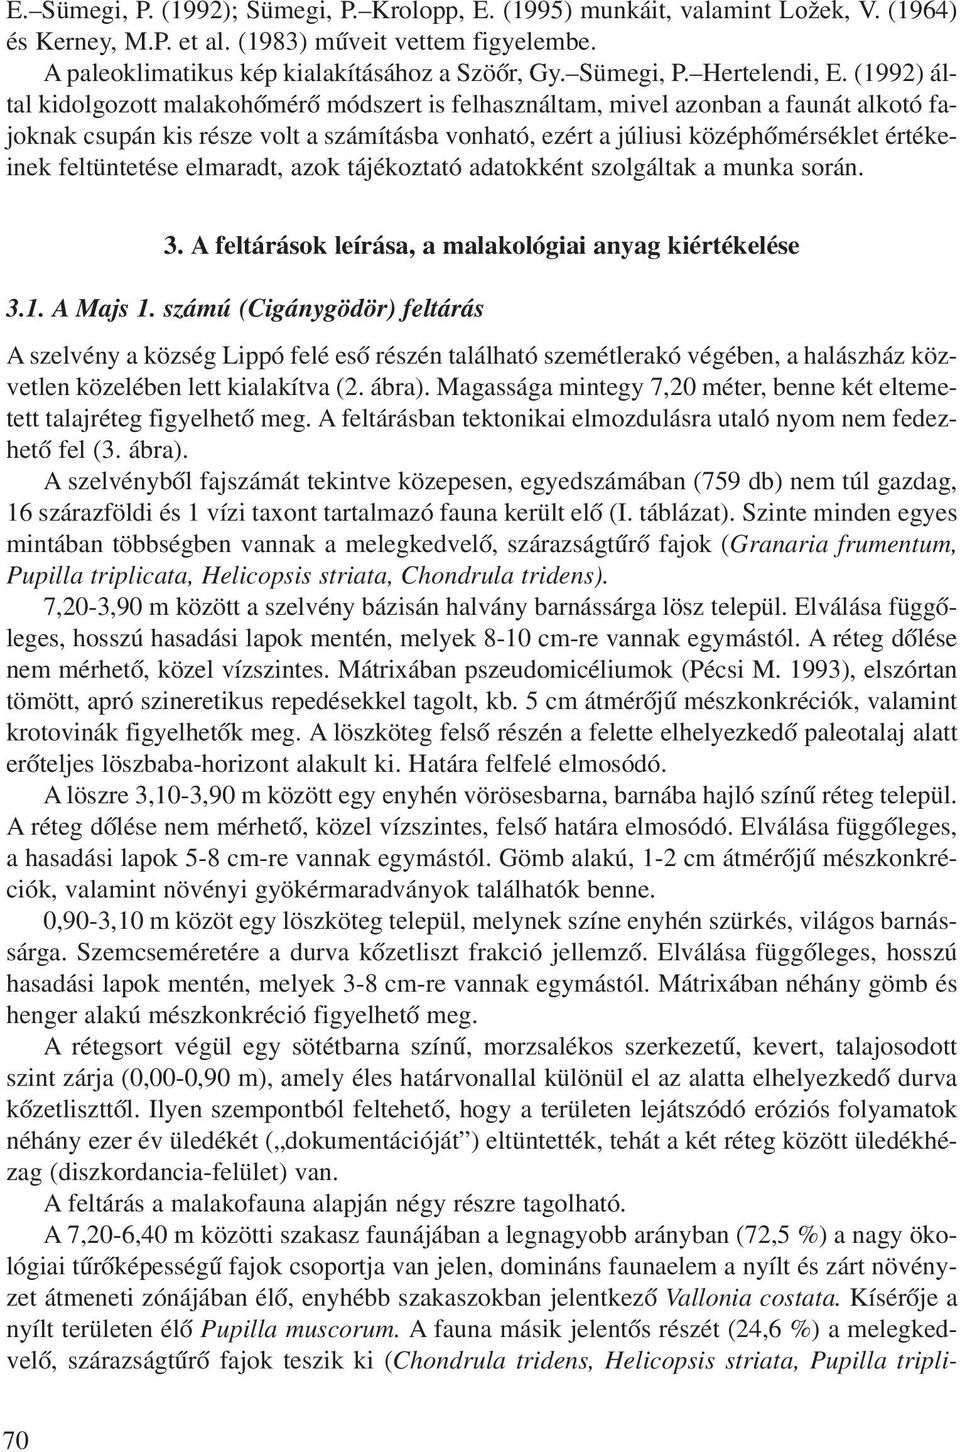 (1992) által kidolgozott malakohõmérõ módszert is felhasználtam, mivel azonban a faunát alkotó fajoknak csupán kis része volt a számításba vonható, ezért a júliusi középhõmérséklet értékeinek